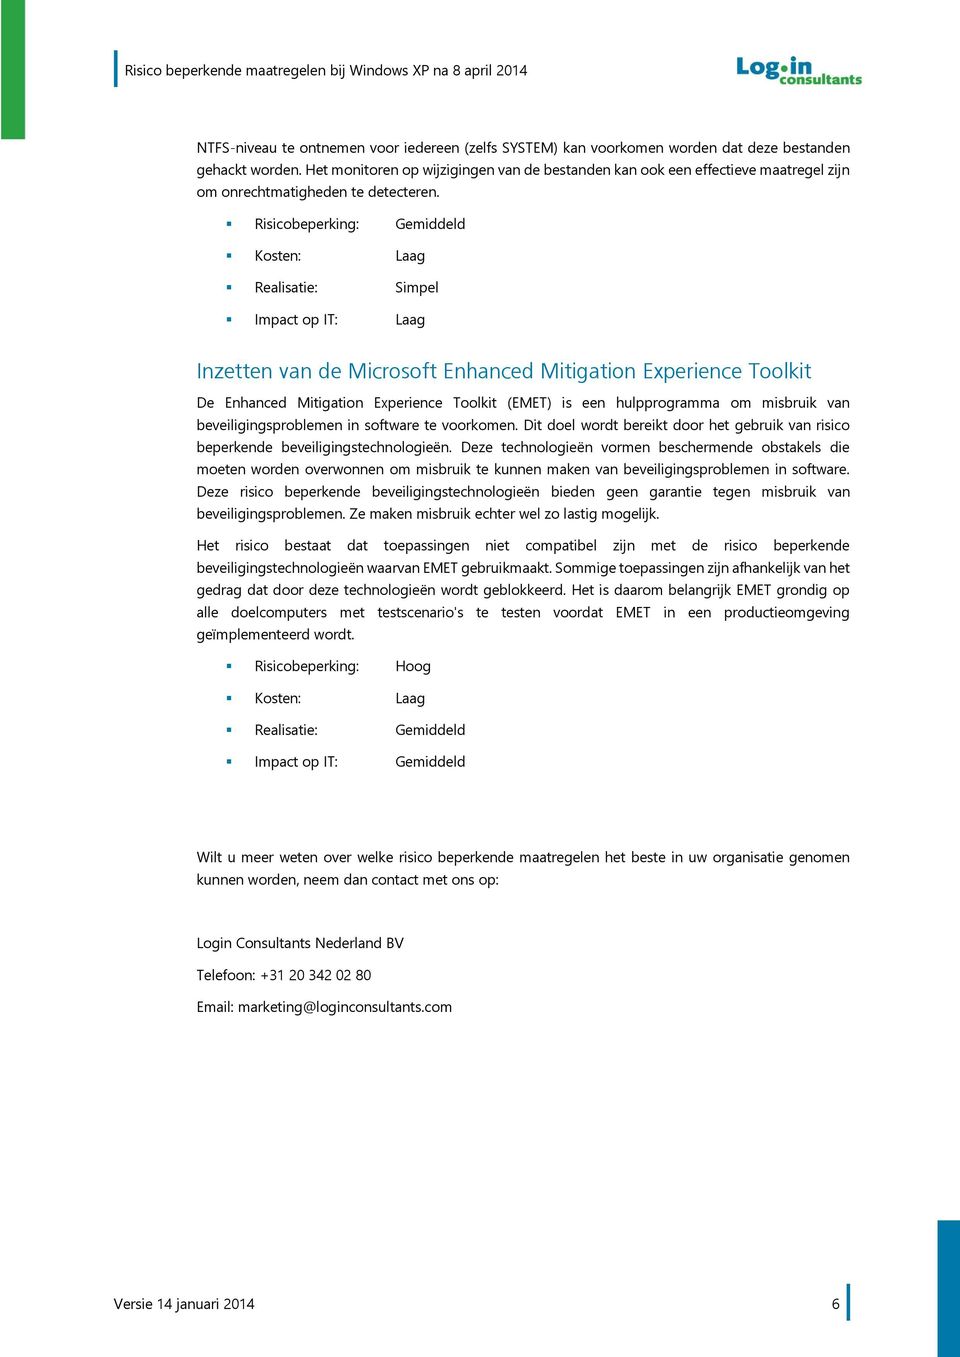 Realisatie: Simpel Inzetten van de Microsoft Enhanced Mitigation Experience Toolkit De Enhanced Mitigation Experience Toolkit (EMET) is een hulpprogramma om misbruik van beveiligingsproblemen in